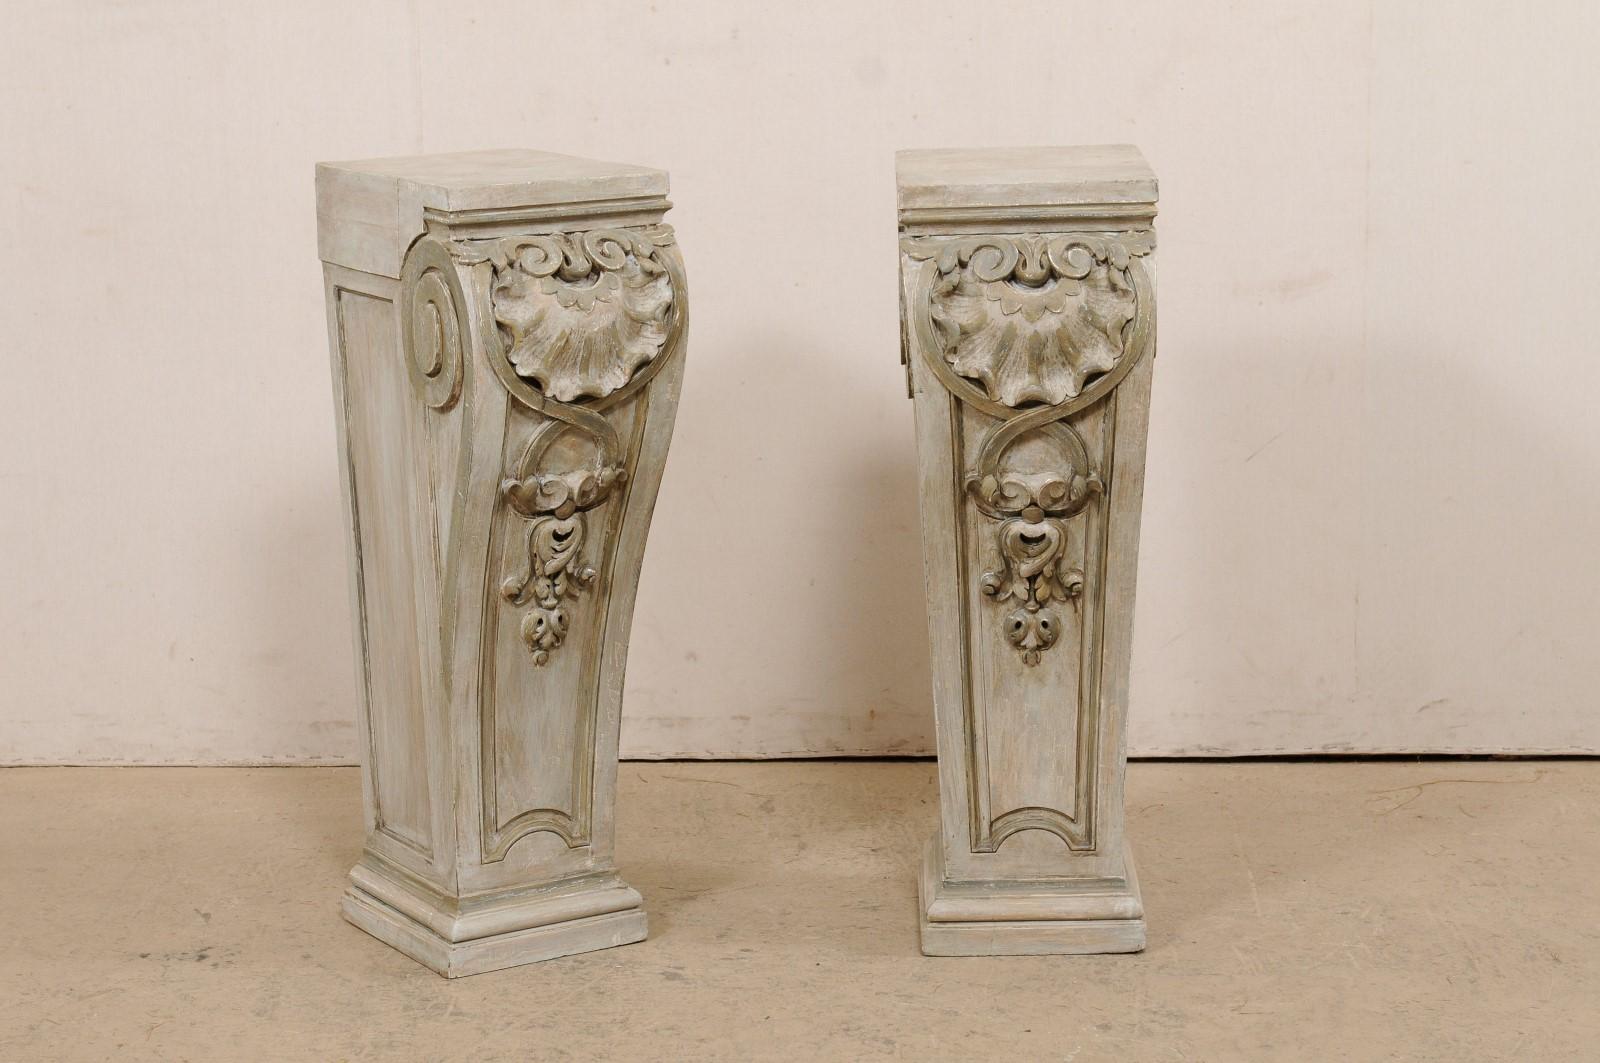 Une paire de piédestaux américains en bois sculpté du début du 20e siècle. Cette paire de piédestaux anciens a été sculptée dans un motif de coquille, de feuillage et de volute. Les sommets, de forme rectangulaire, sont plats et dépassent de loin